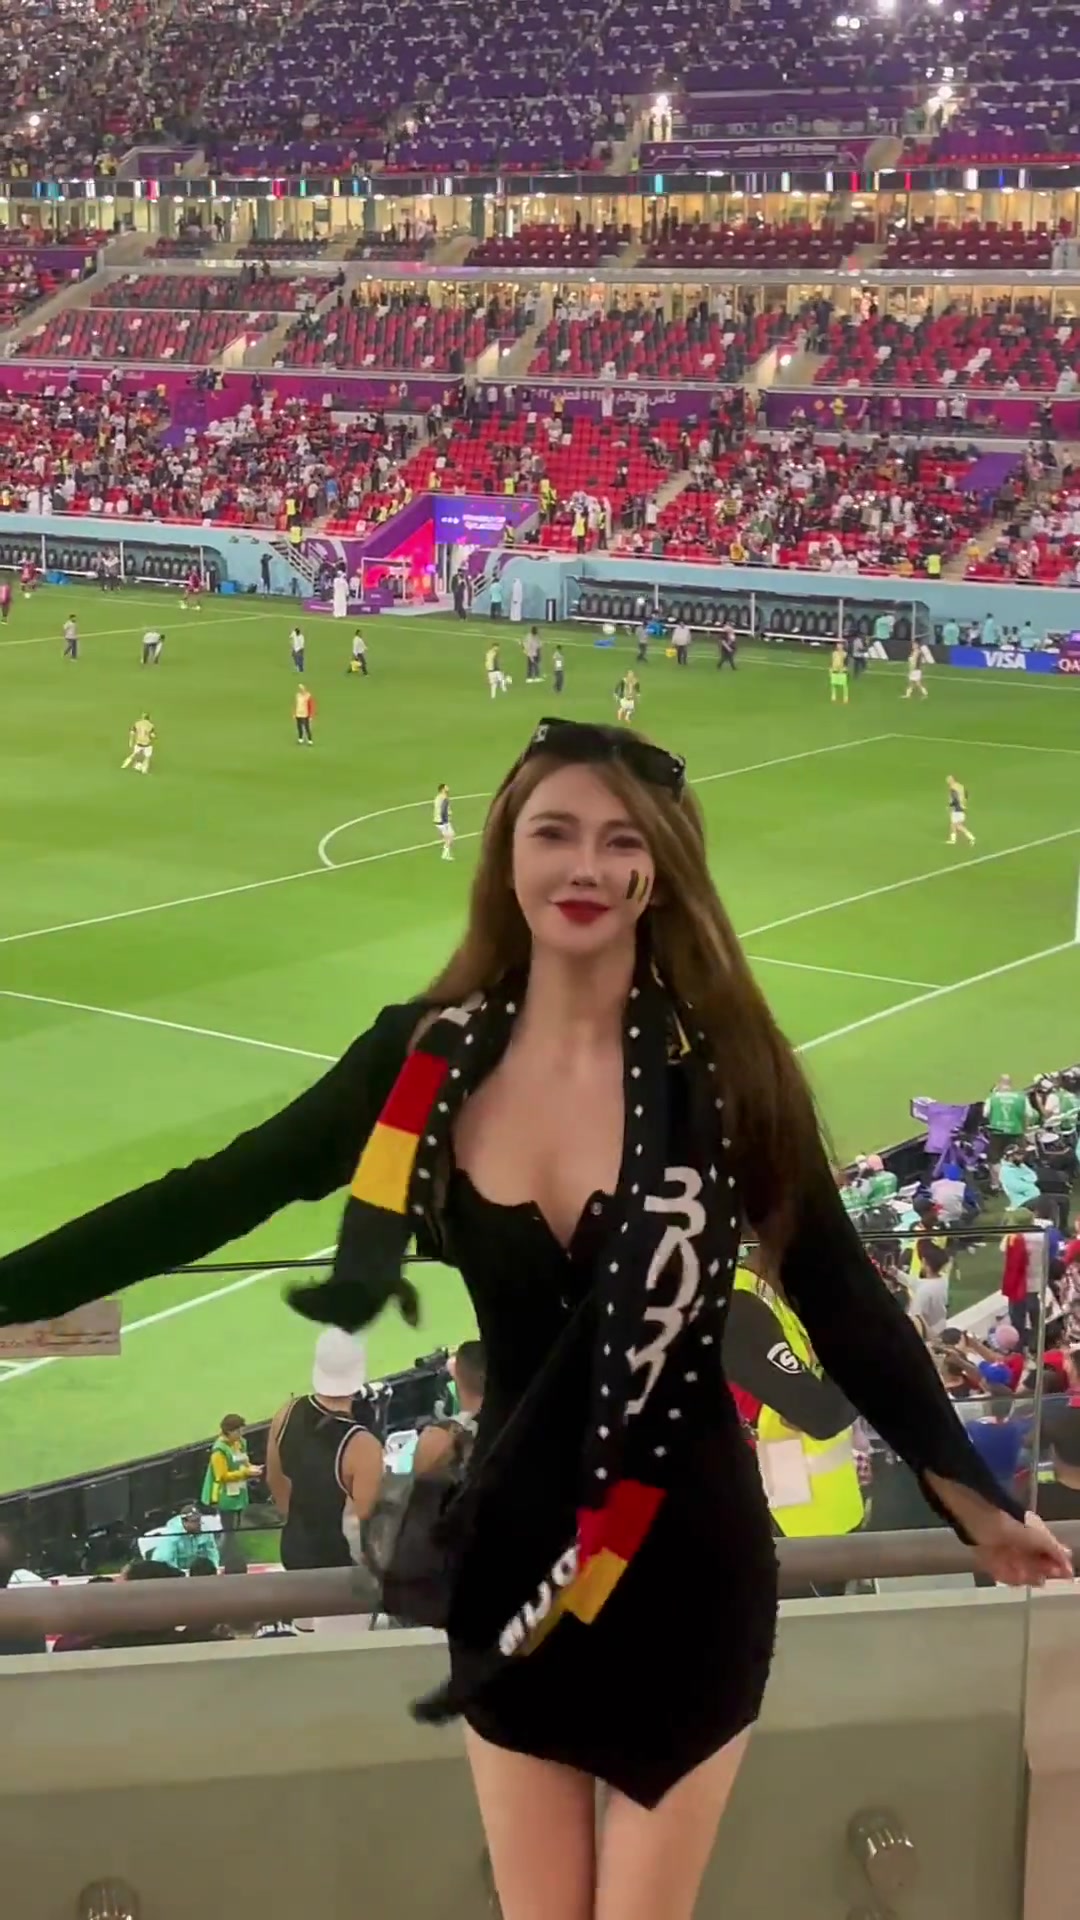 场边的比利时美女球迷真吸引人